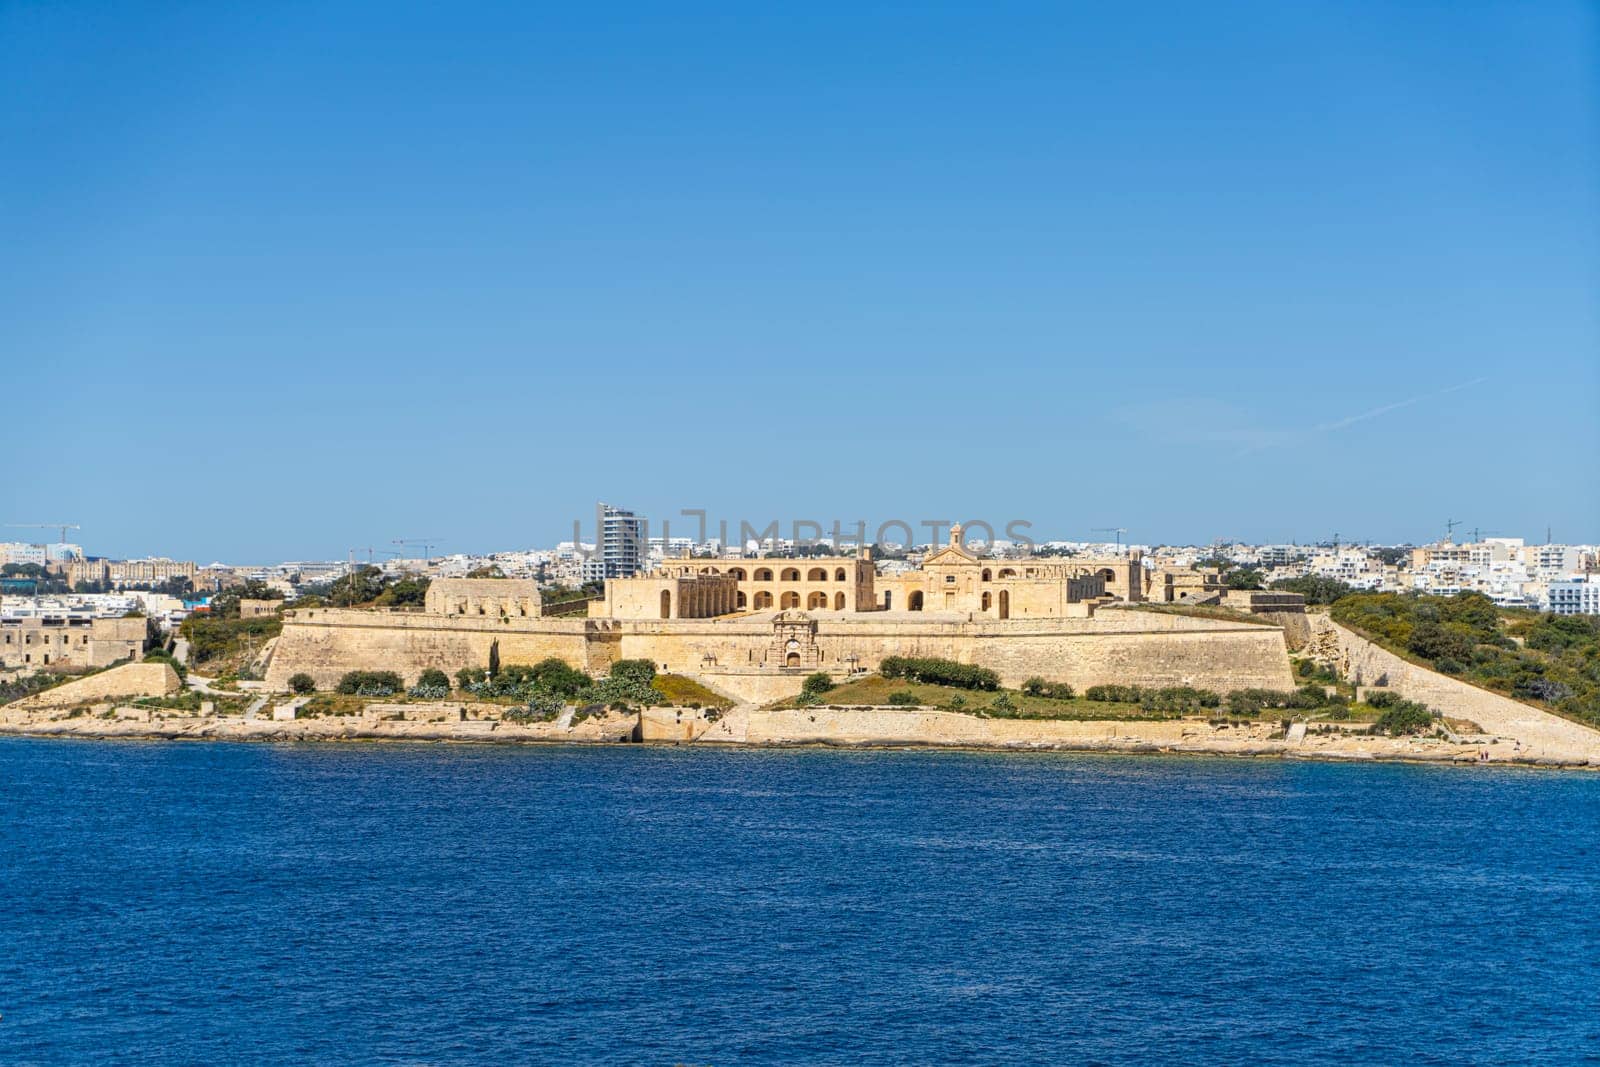 Fort Manoel in Malta by sergiodv